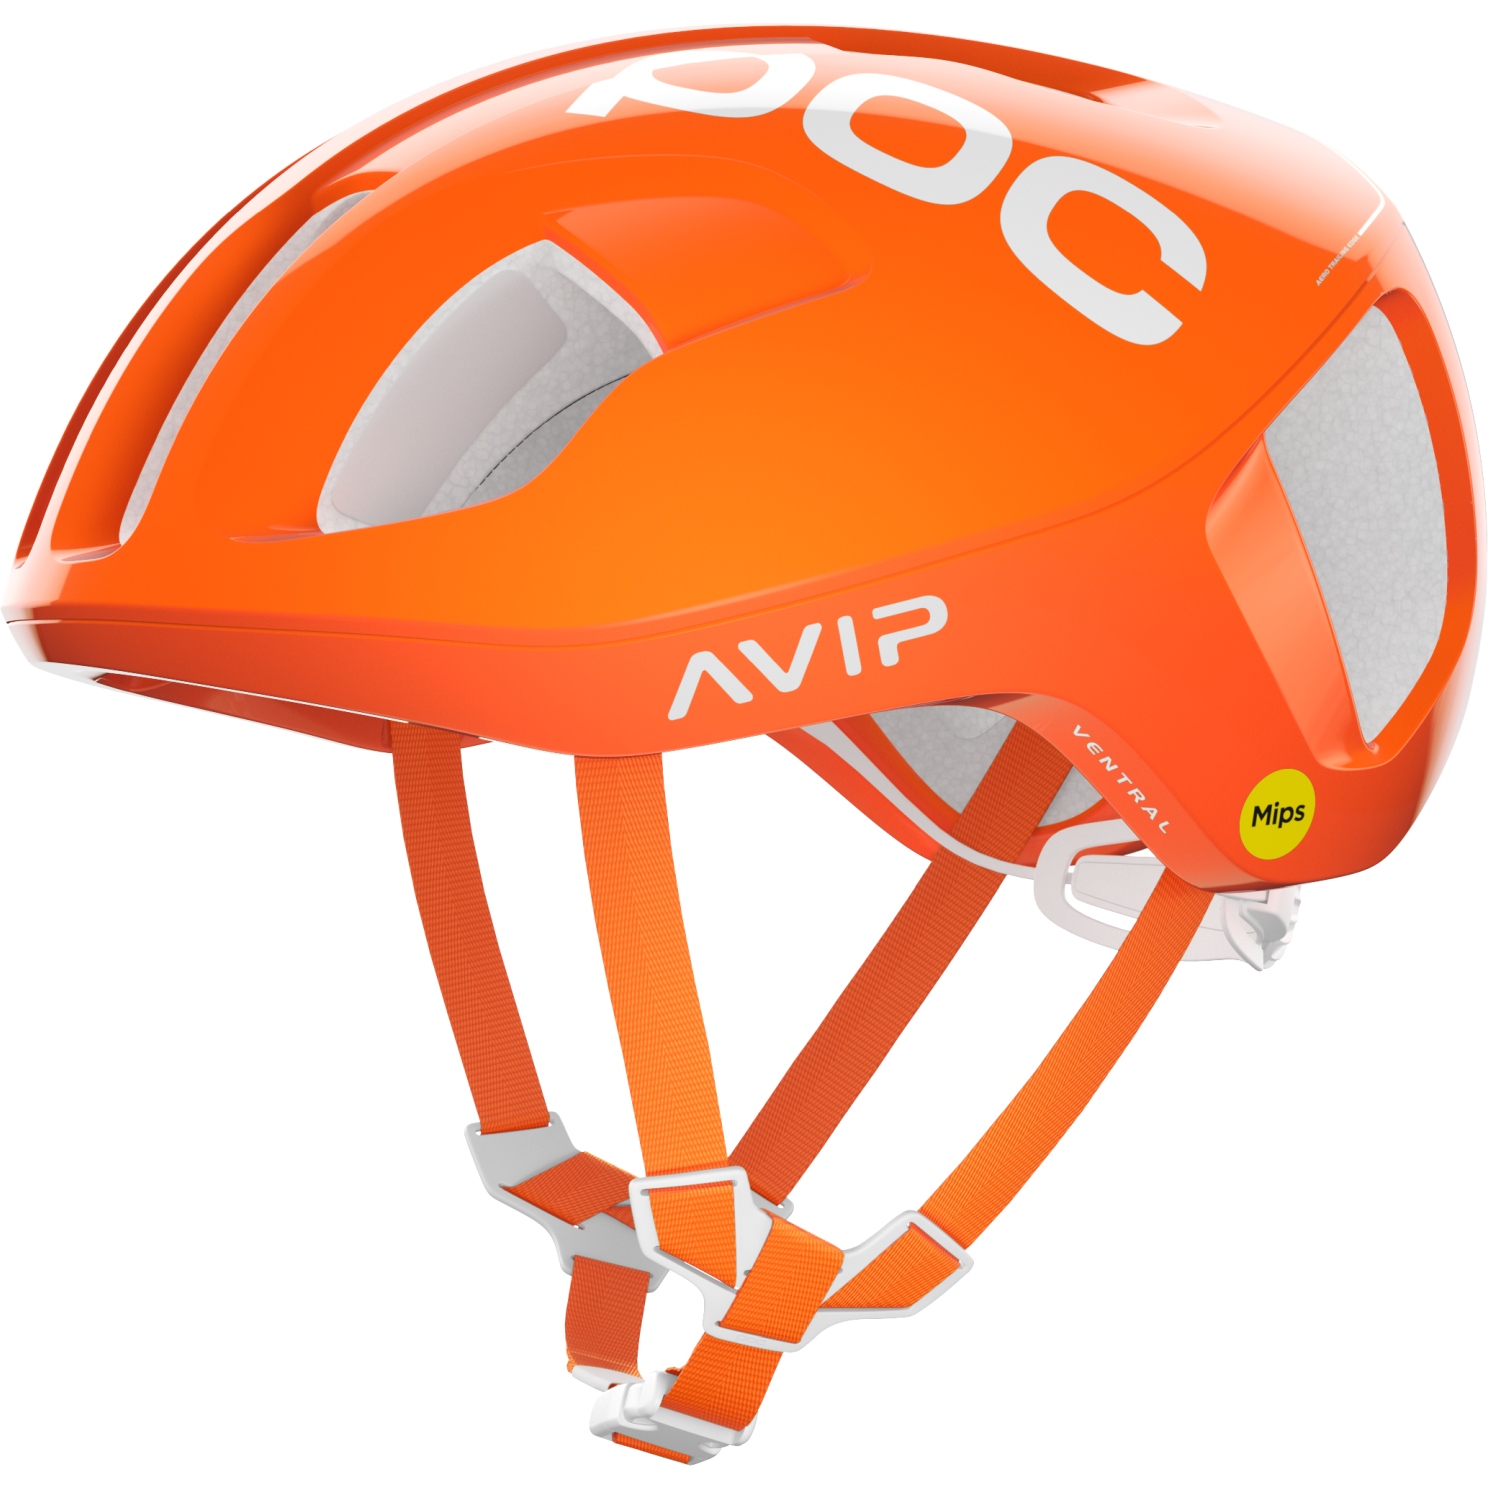 Produktbild von POC Ventral MIPS Helm - 1217 Fluorescent Orange Avip